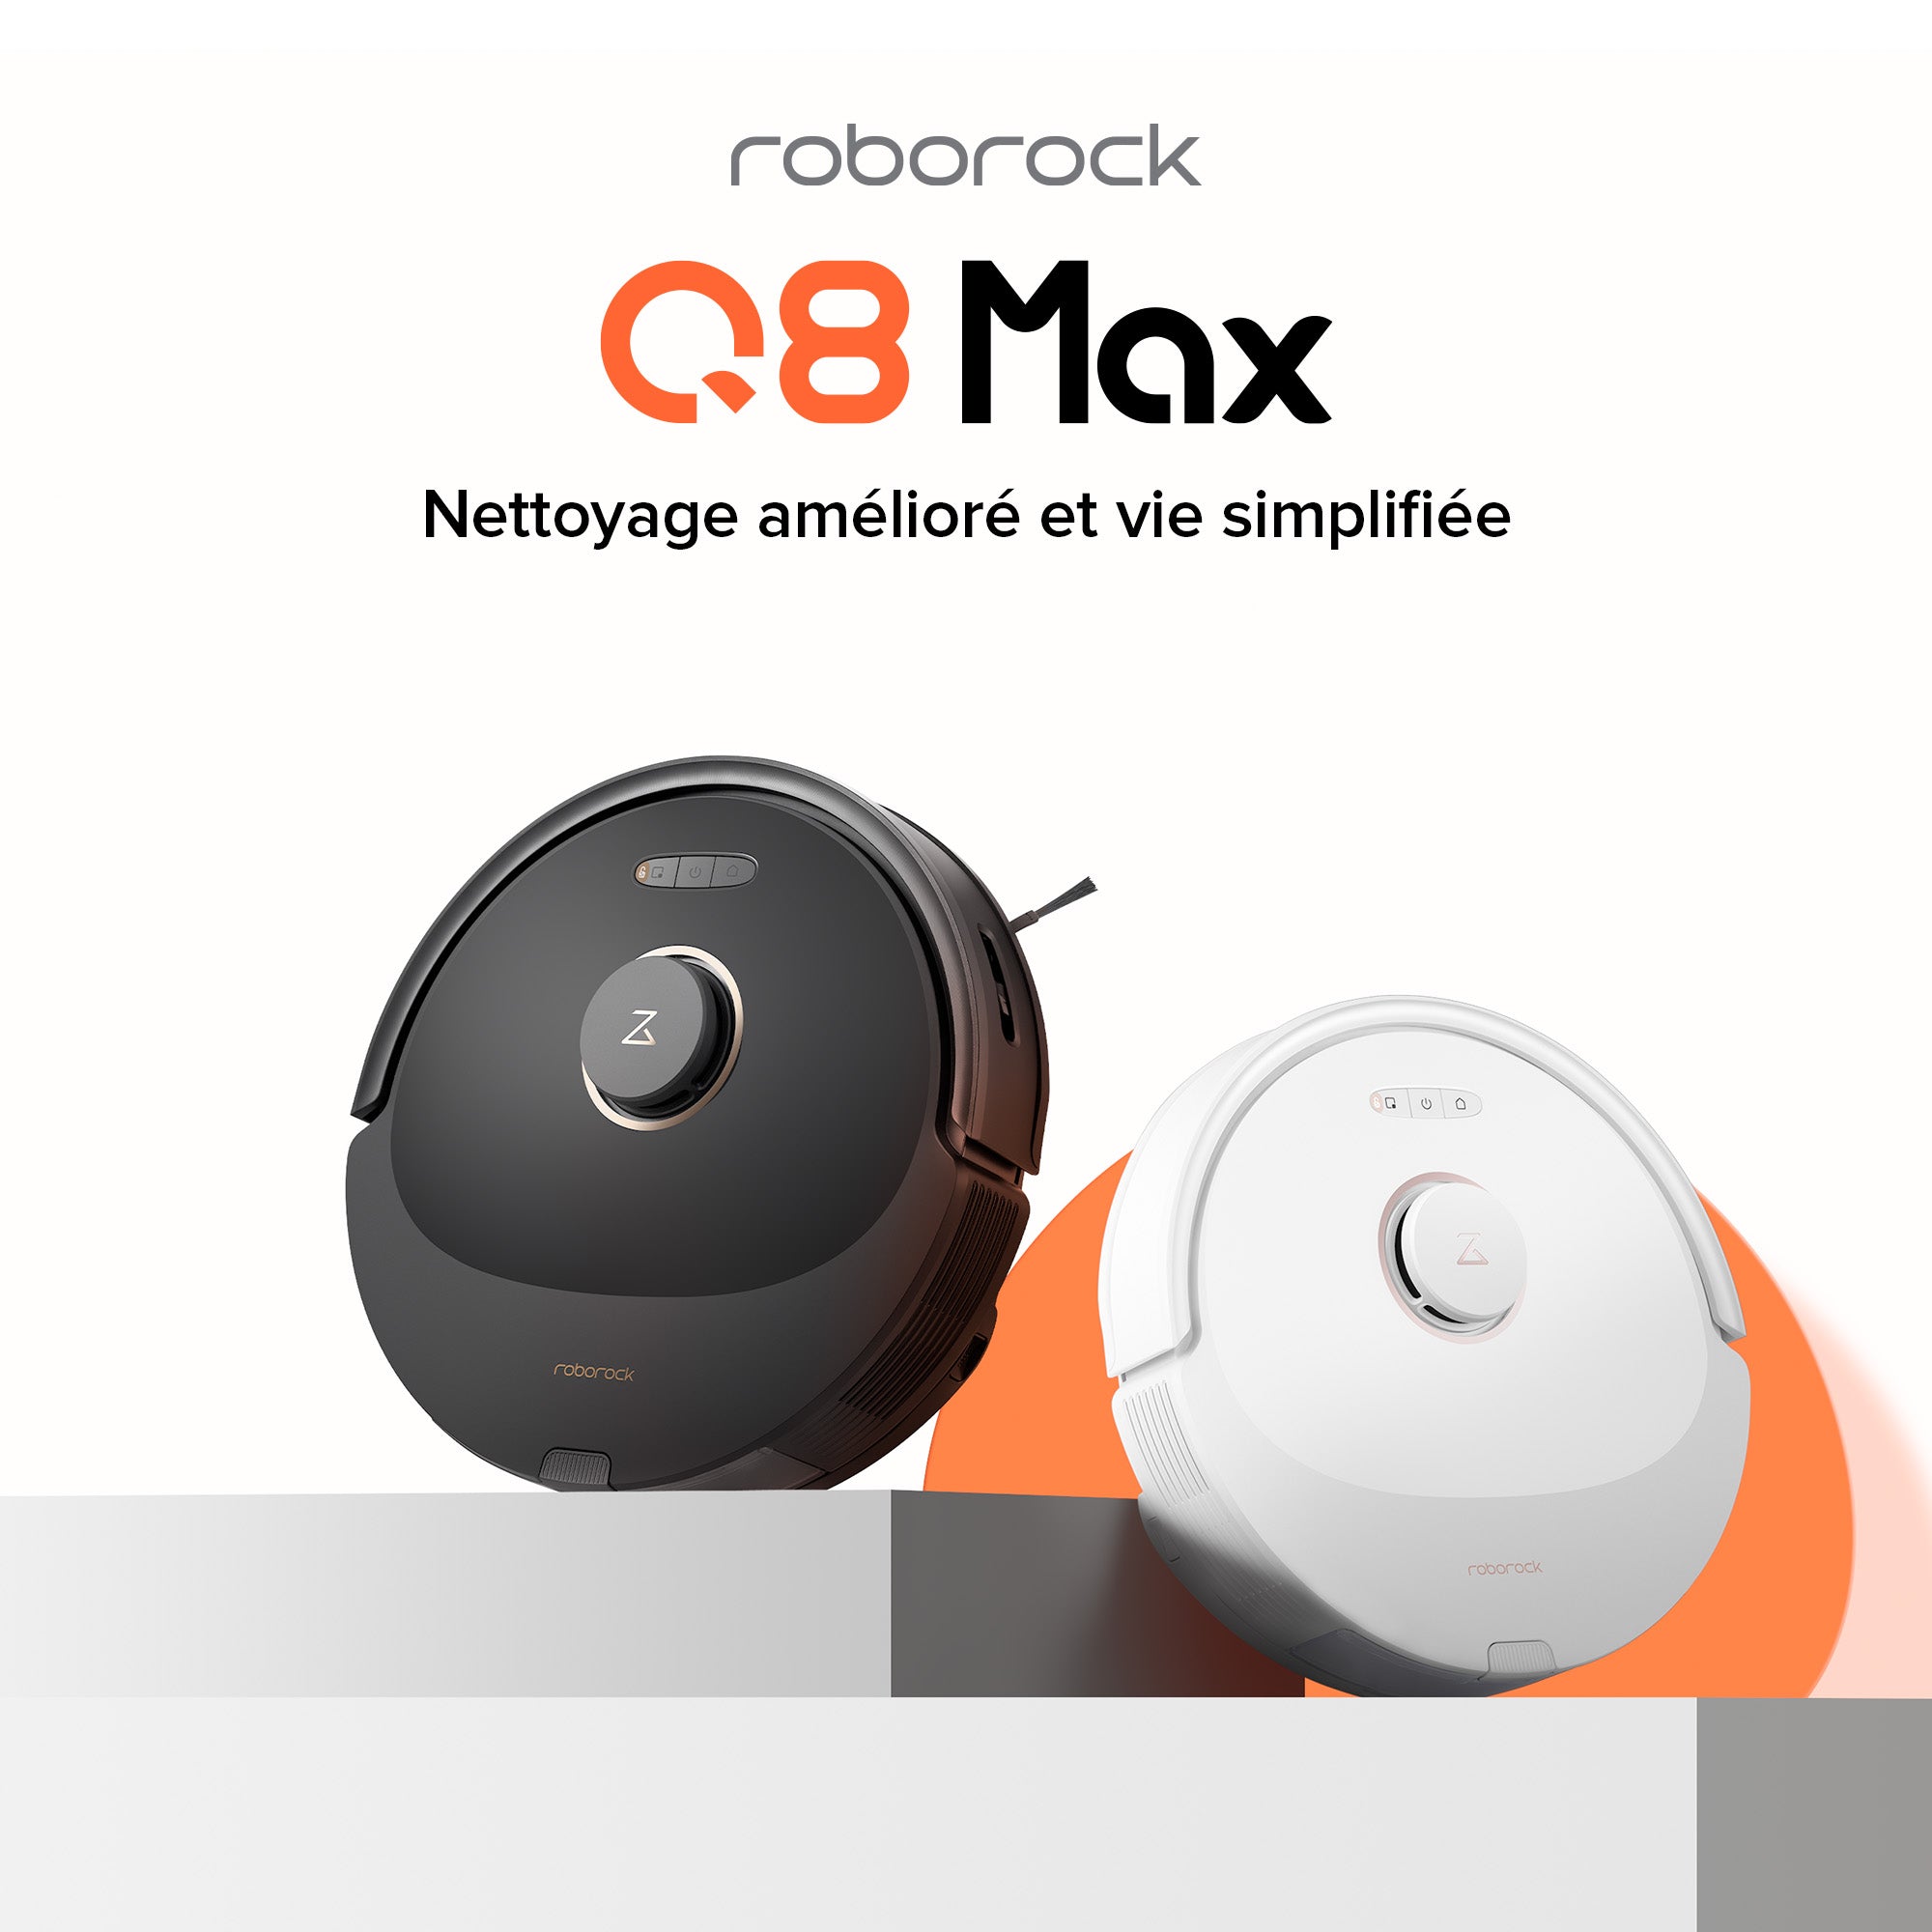 Ménage automatique abordable avec les robots aspirateurs Roborock Q5 Pro et  Q8 Max - Le Monde Numérique